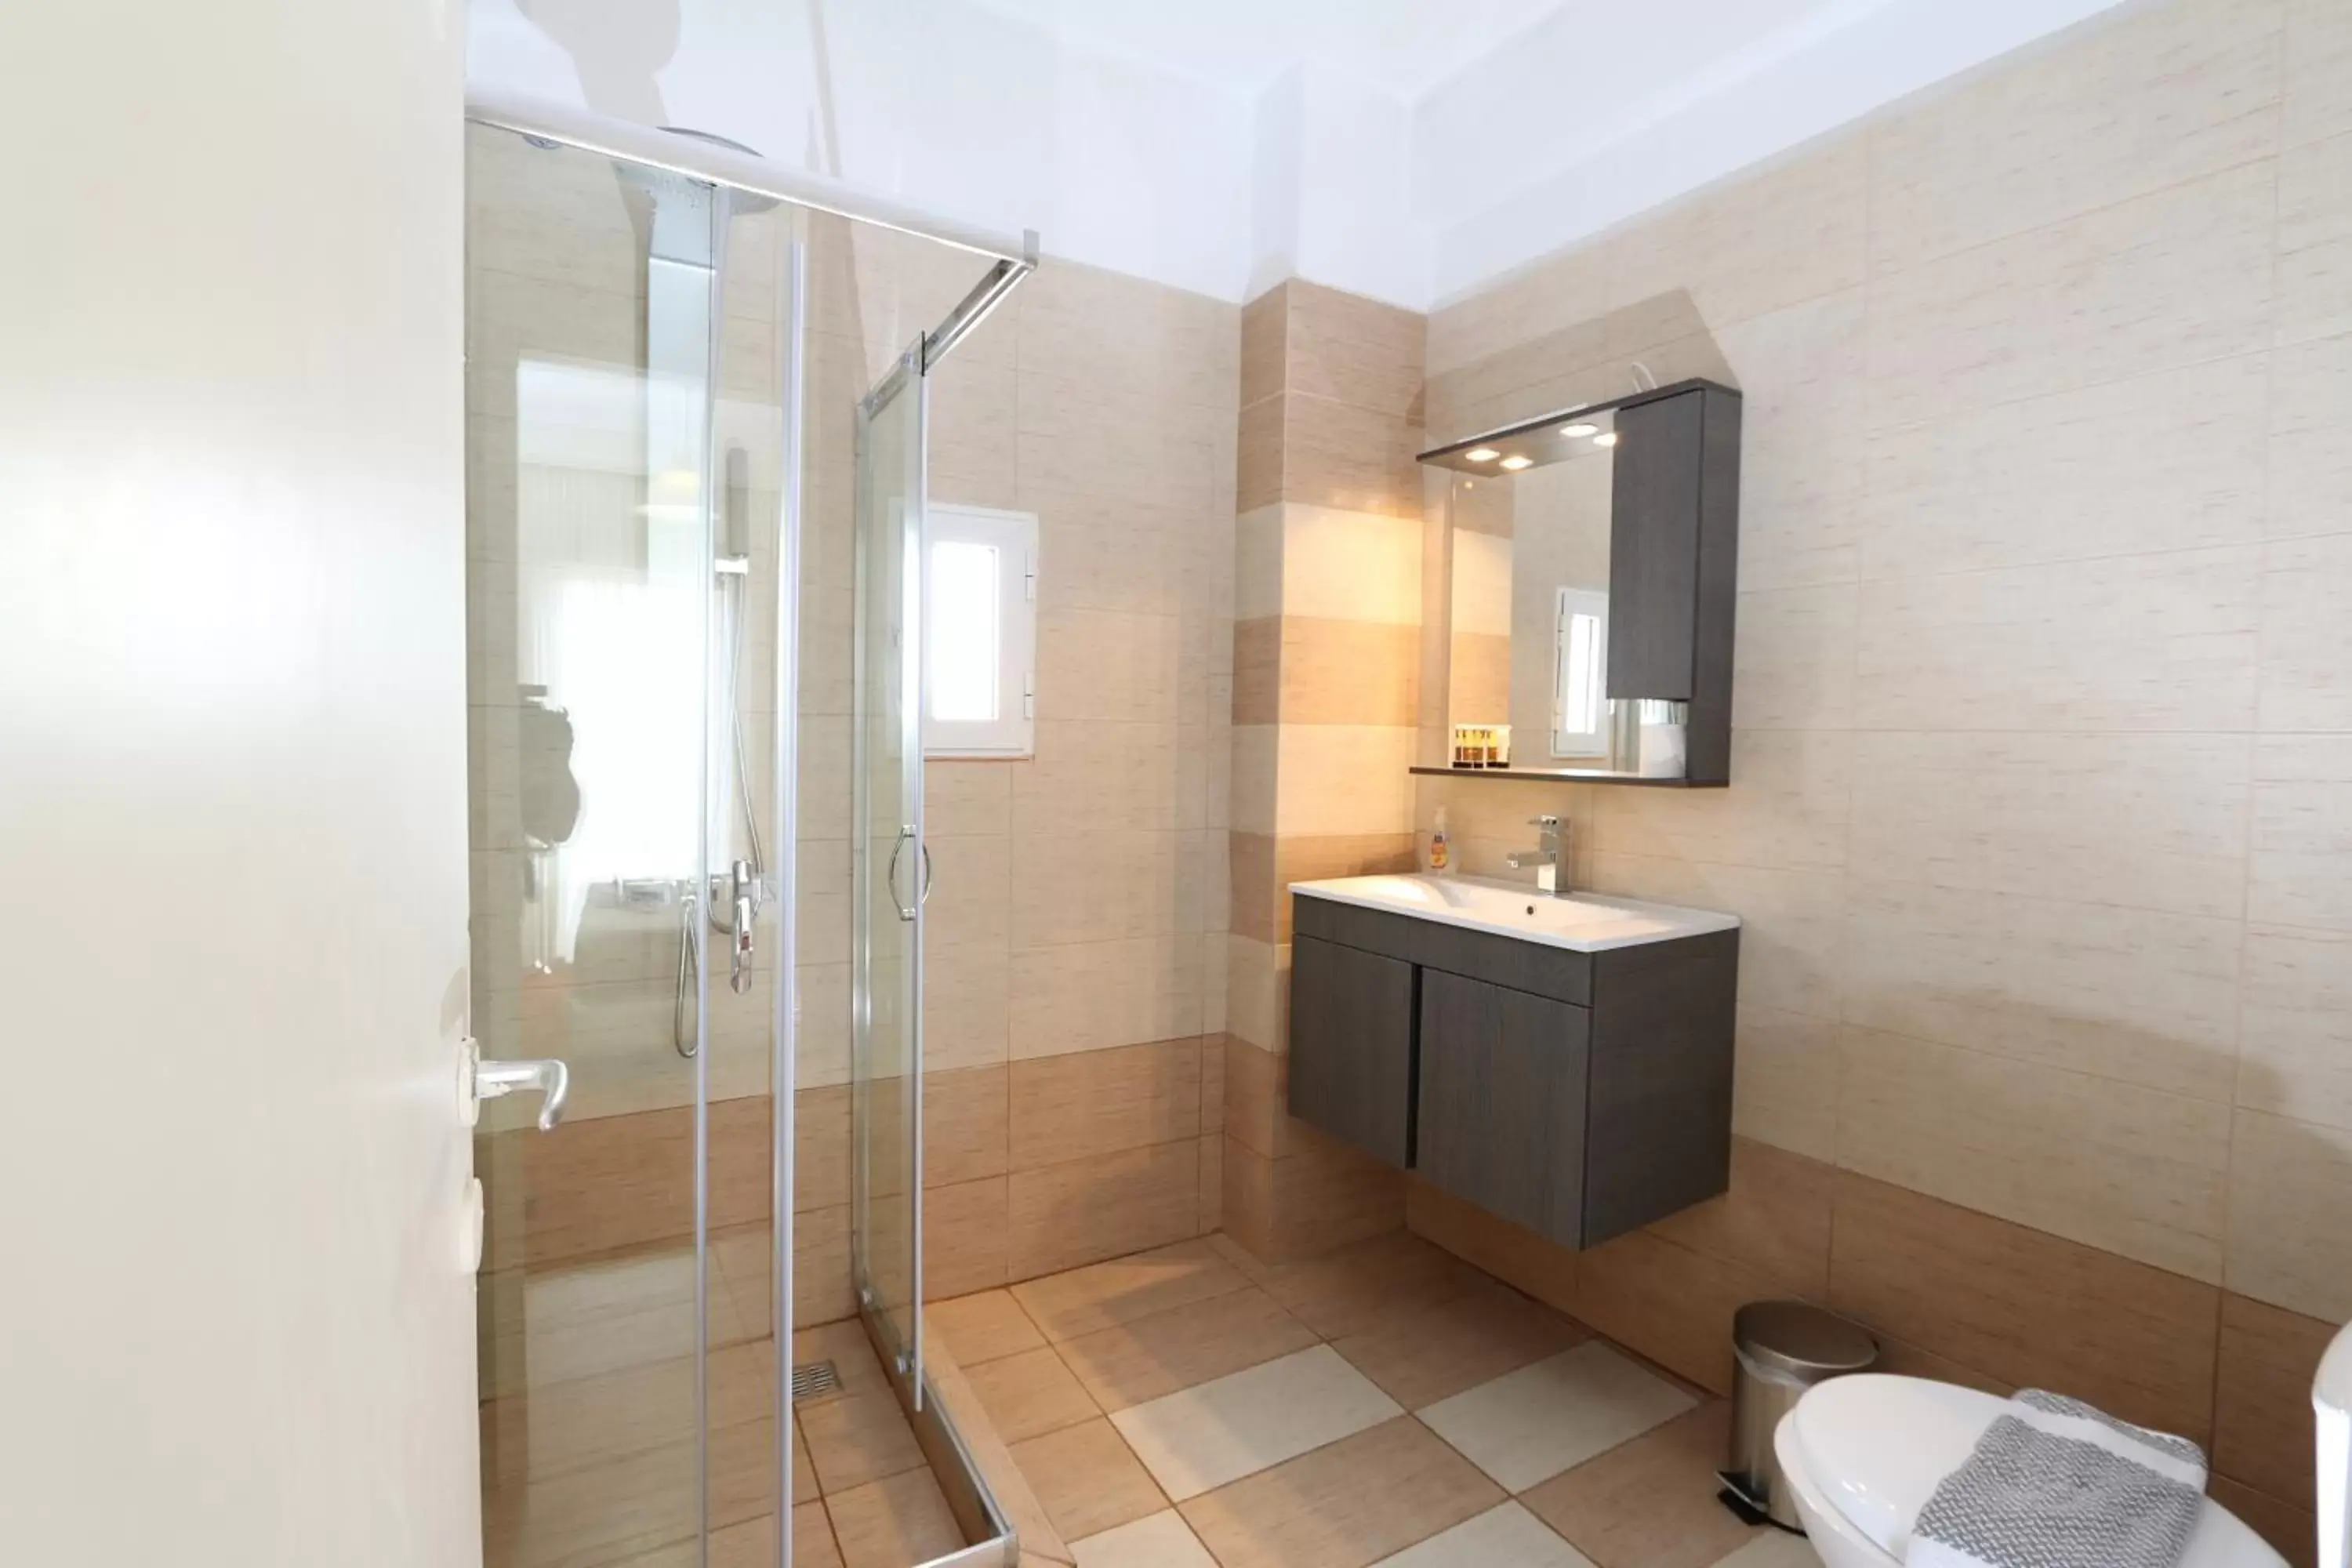 Area and facilities, Bathroom in Athens Delta Hotel